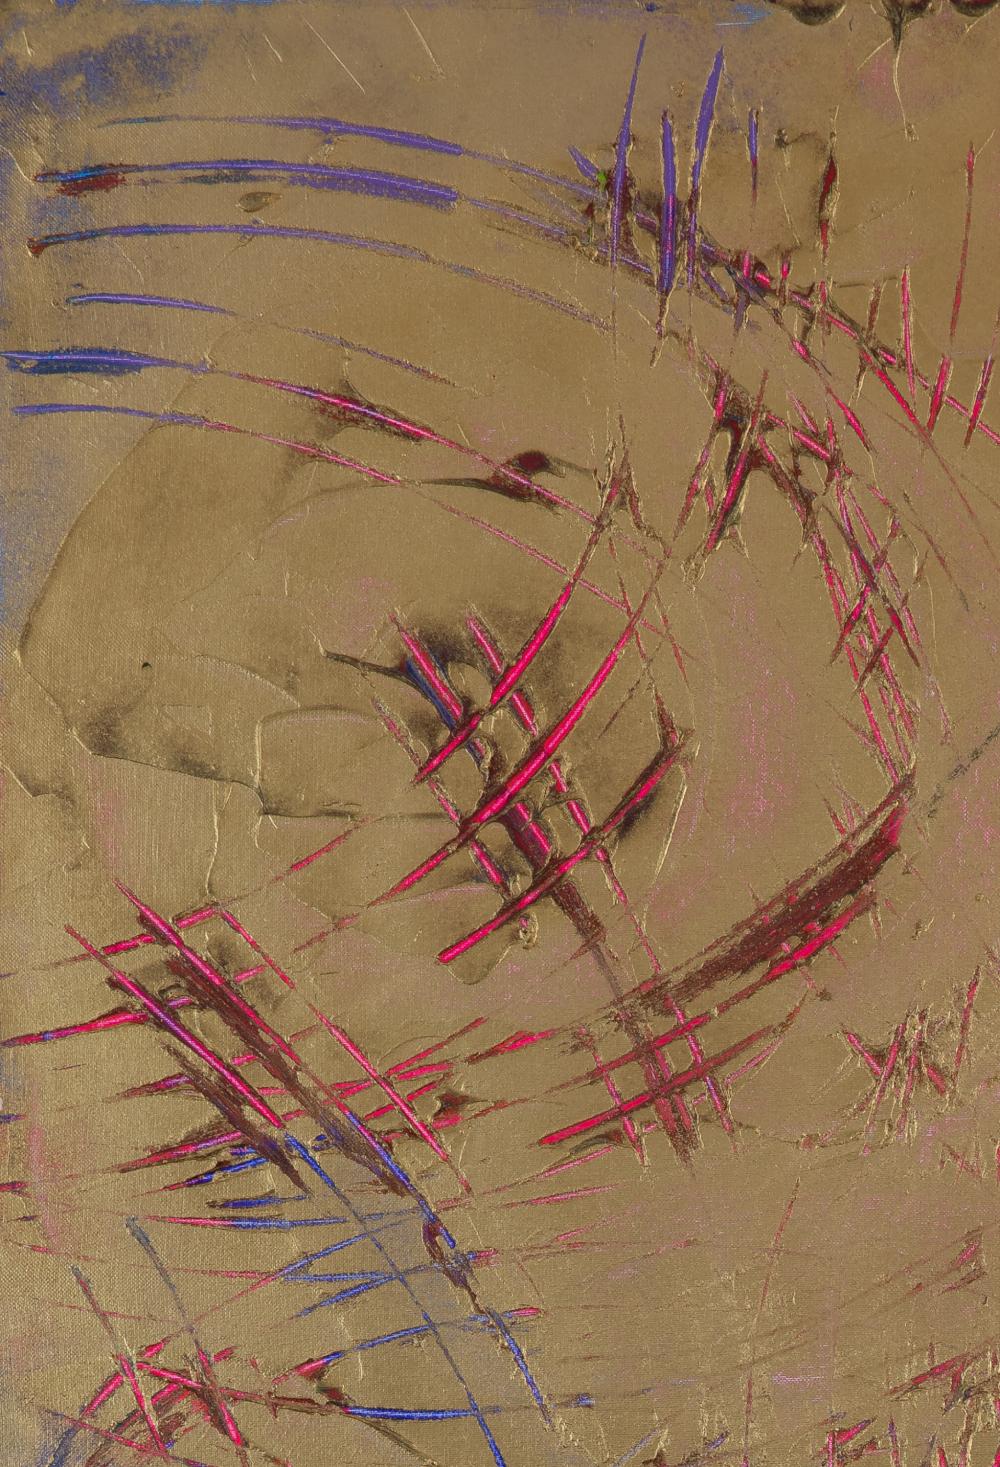 Charlotte d'or de Lélia Pissarro (b. 1963)
Technique mixte et feuille d'or sur toile
102 x 76 cm (40 ¹/₈ x 29 ⁷/₈ pouces)
Signé et titré au dos
Exécuté en 2020

Cette œuvre est accompagnée d'un certificat d'authenticité de l'artiste

Biographie de